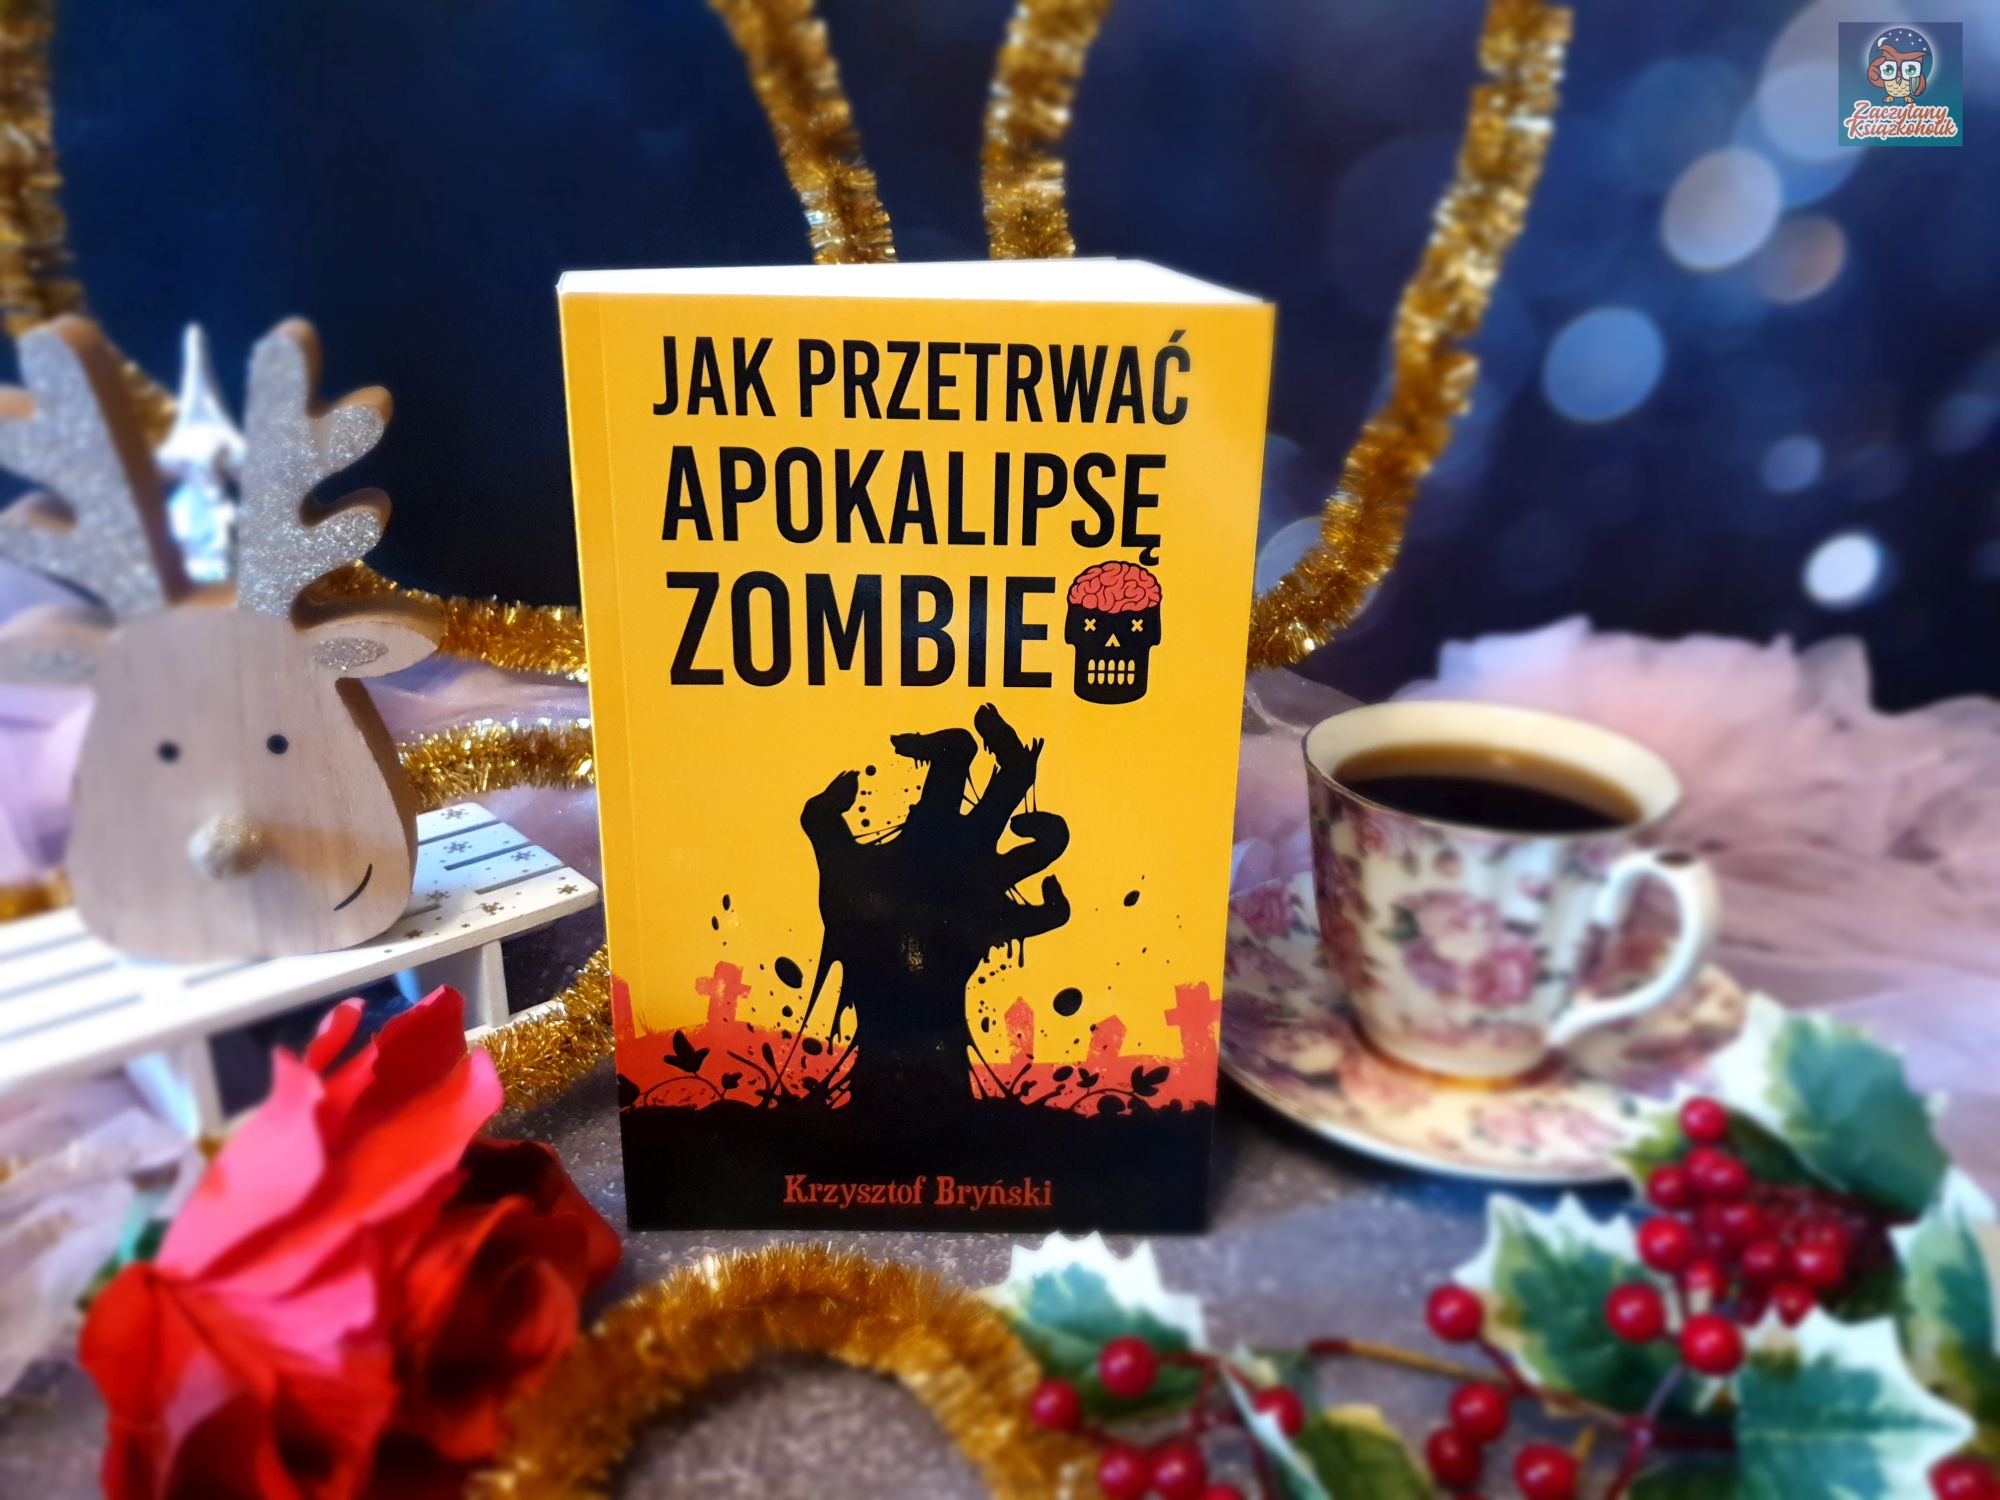 Jak przetrwać apokalipsę zombie - Krzysztof Bryński - zaczytanyksiazkoholik.pl - blog